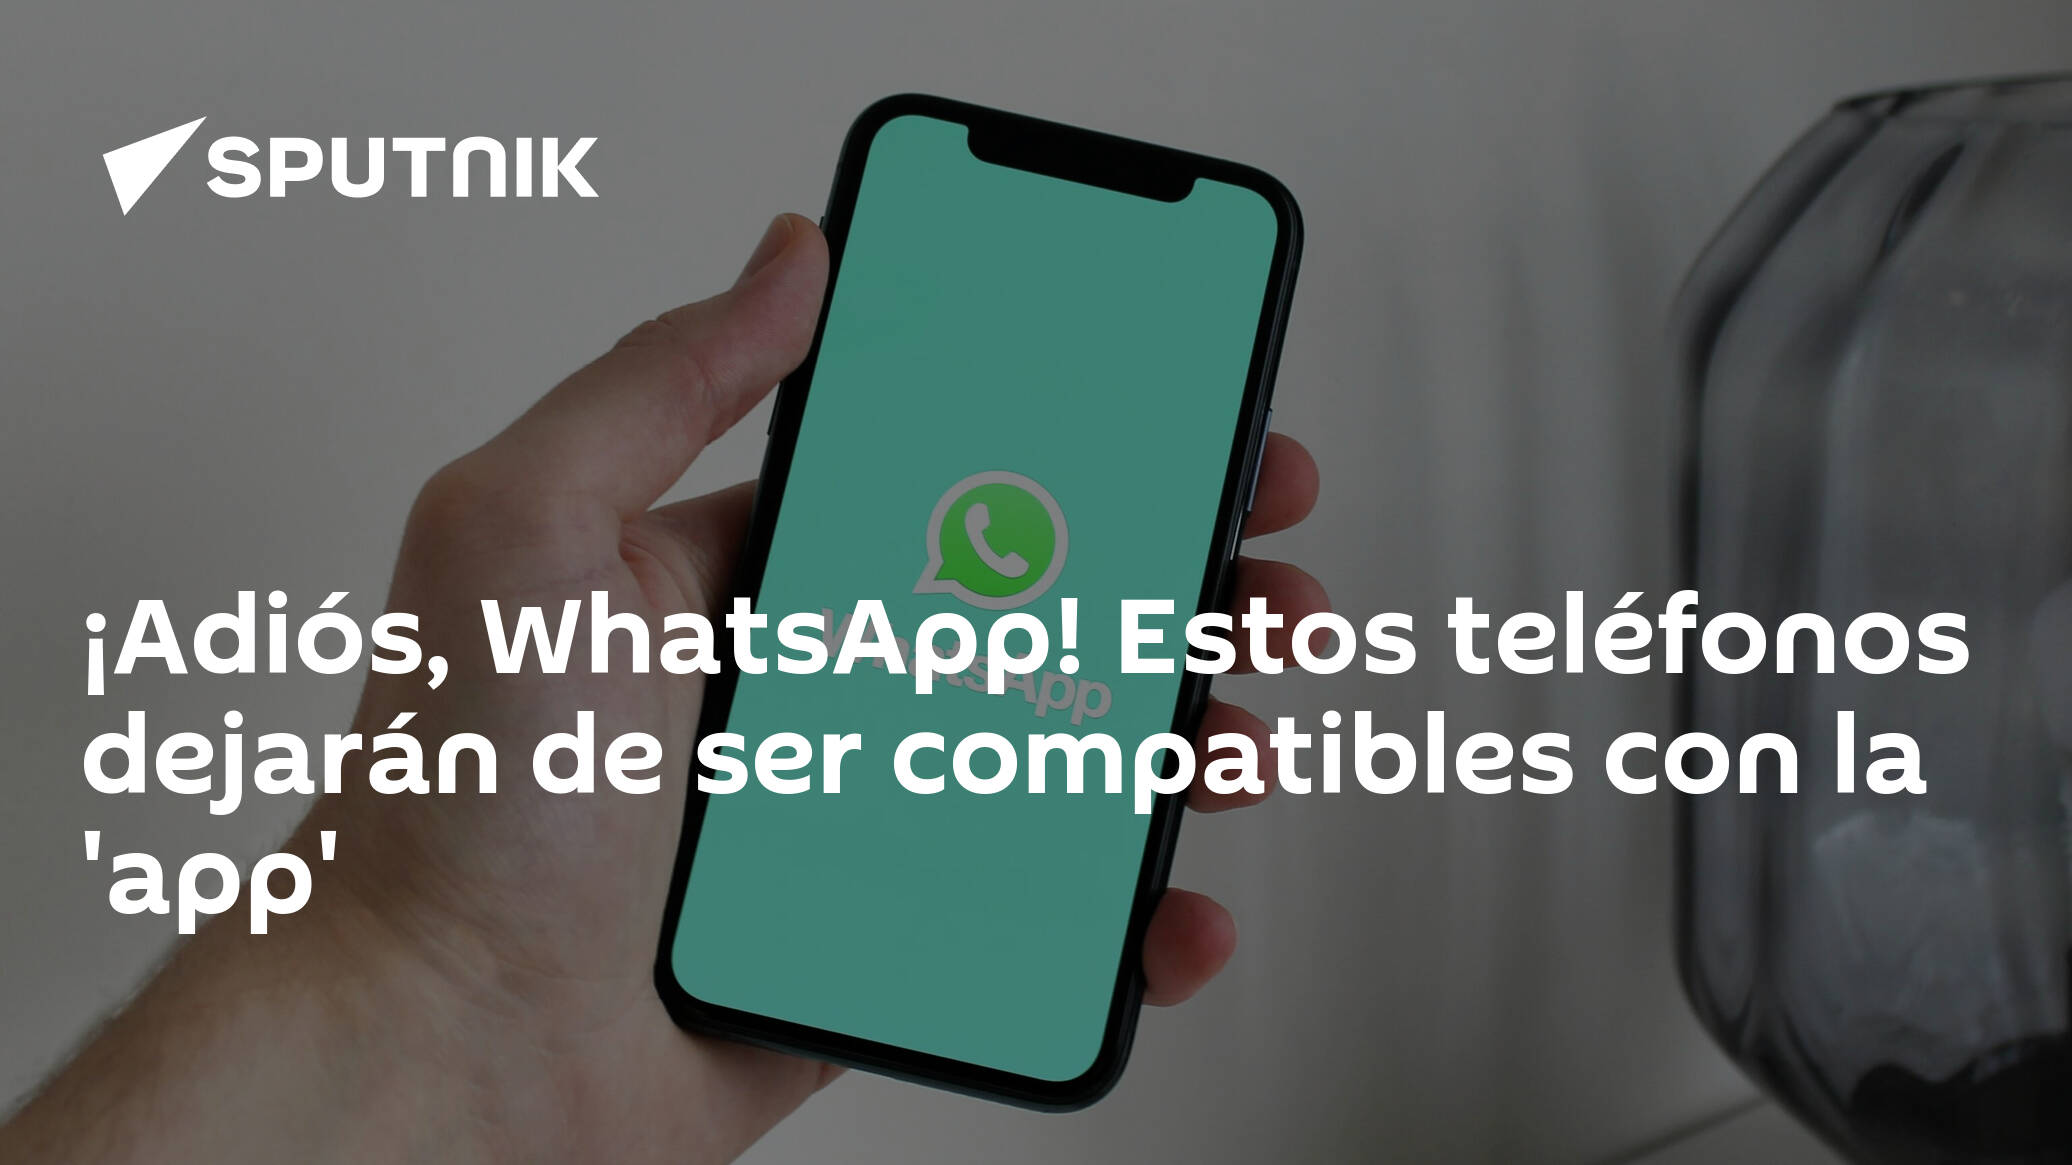 ¡adiós Whatsapp Estos Teléfonos Dejarán De Ser Compatibles Con La App 31012023 Sputnik 1137